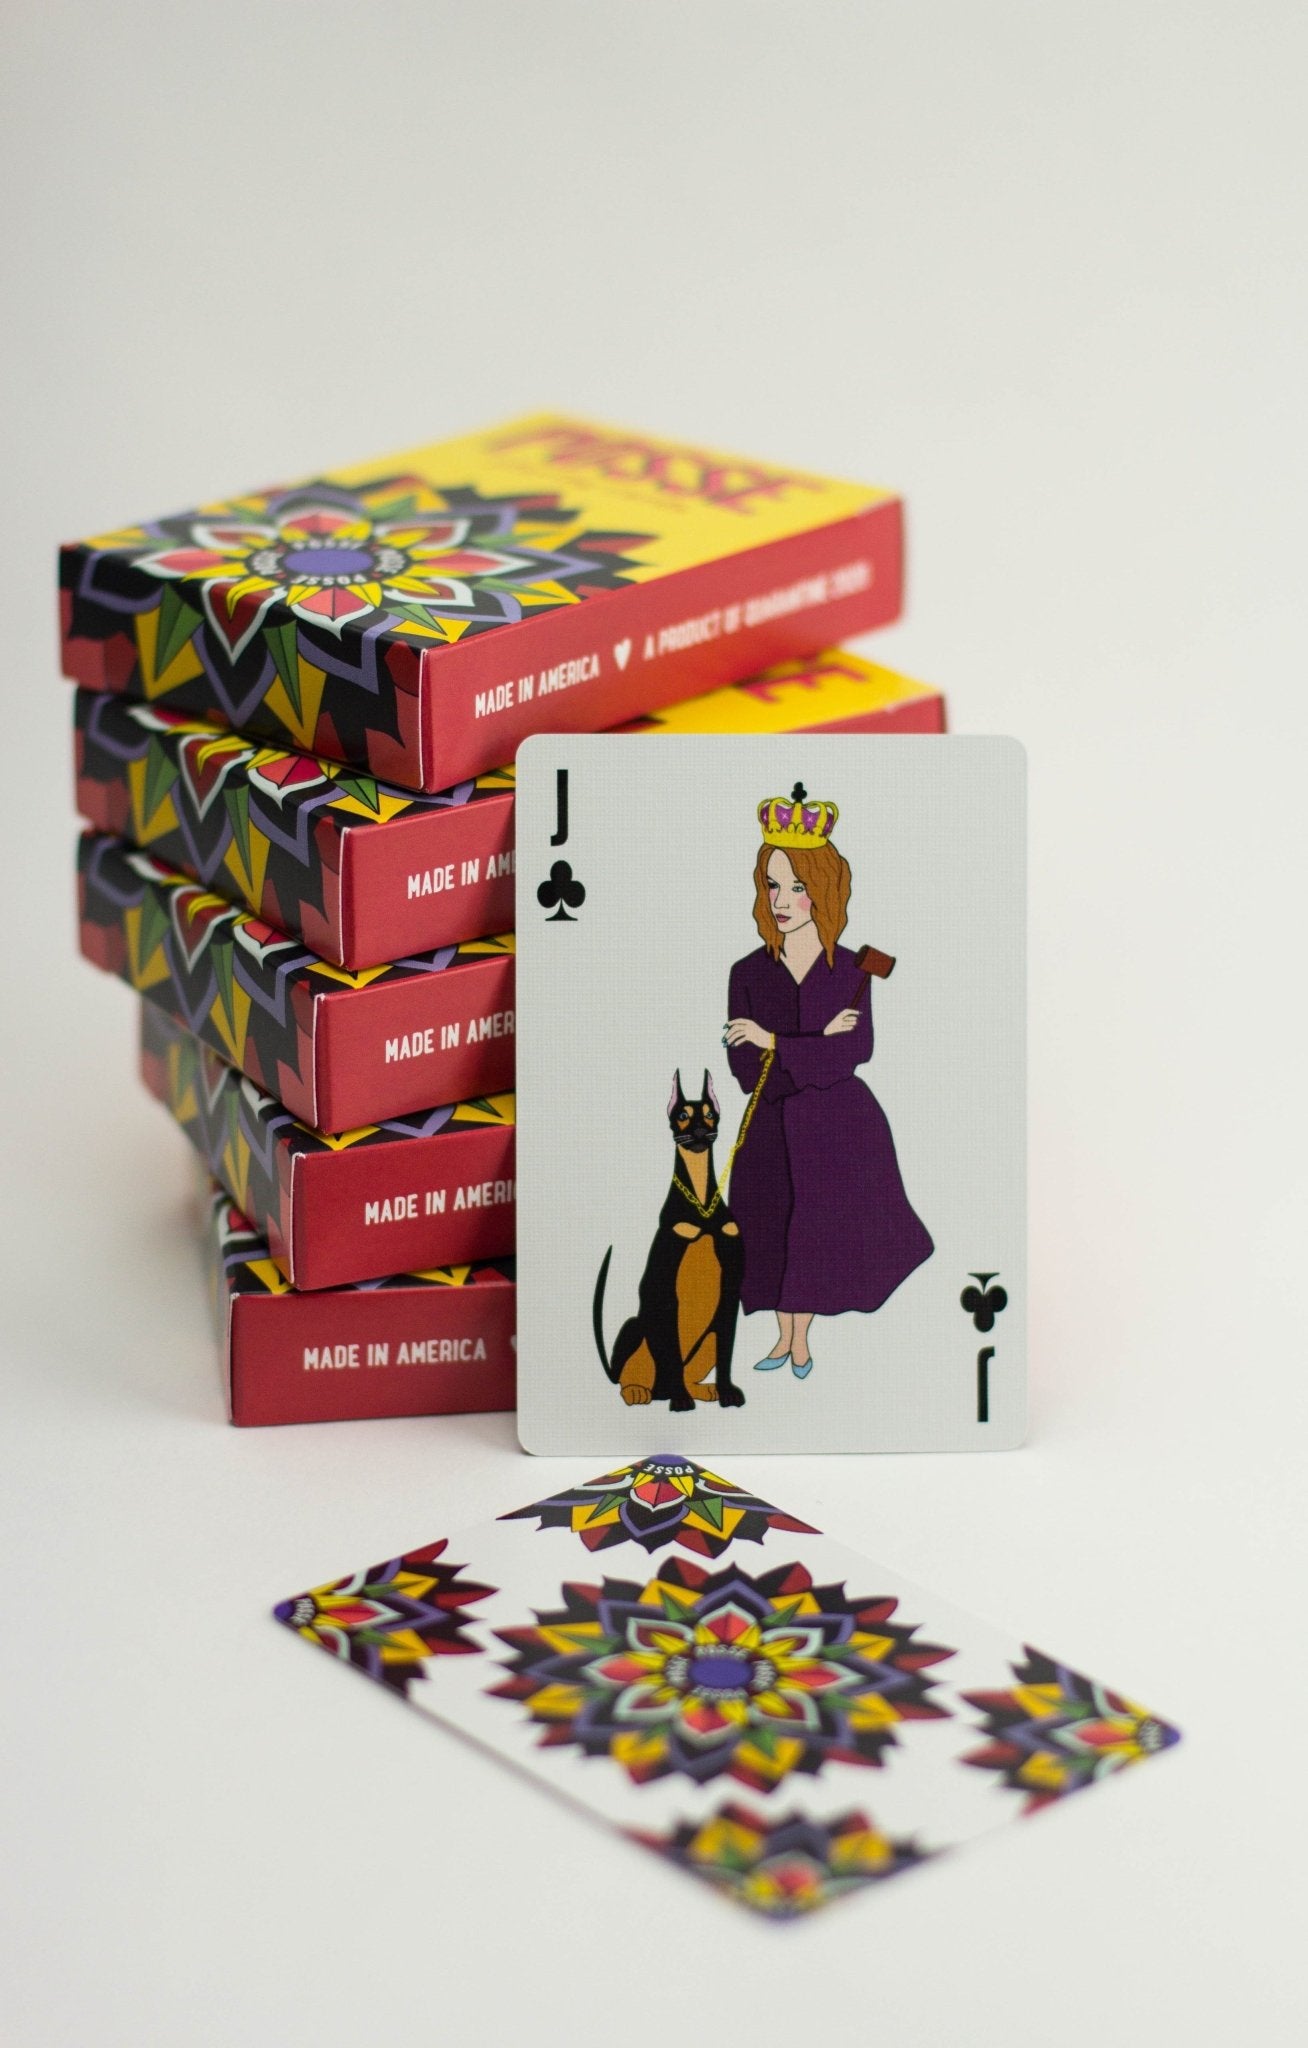 queen of clubs